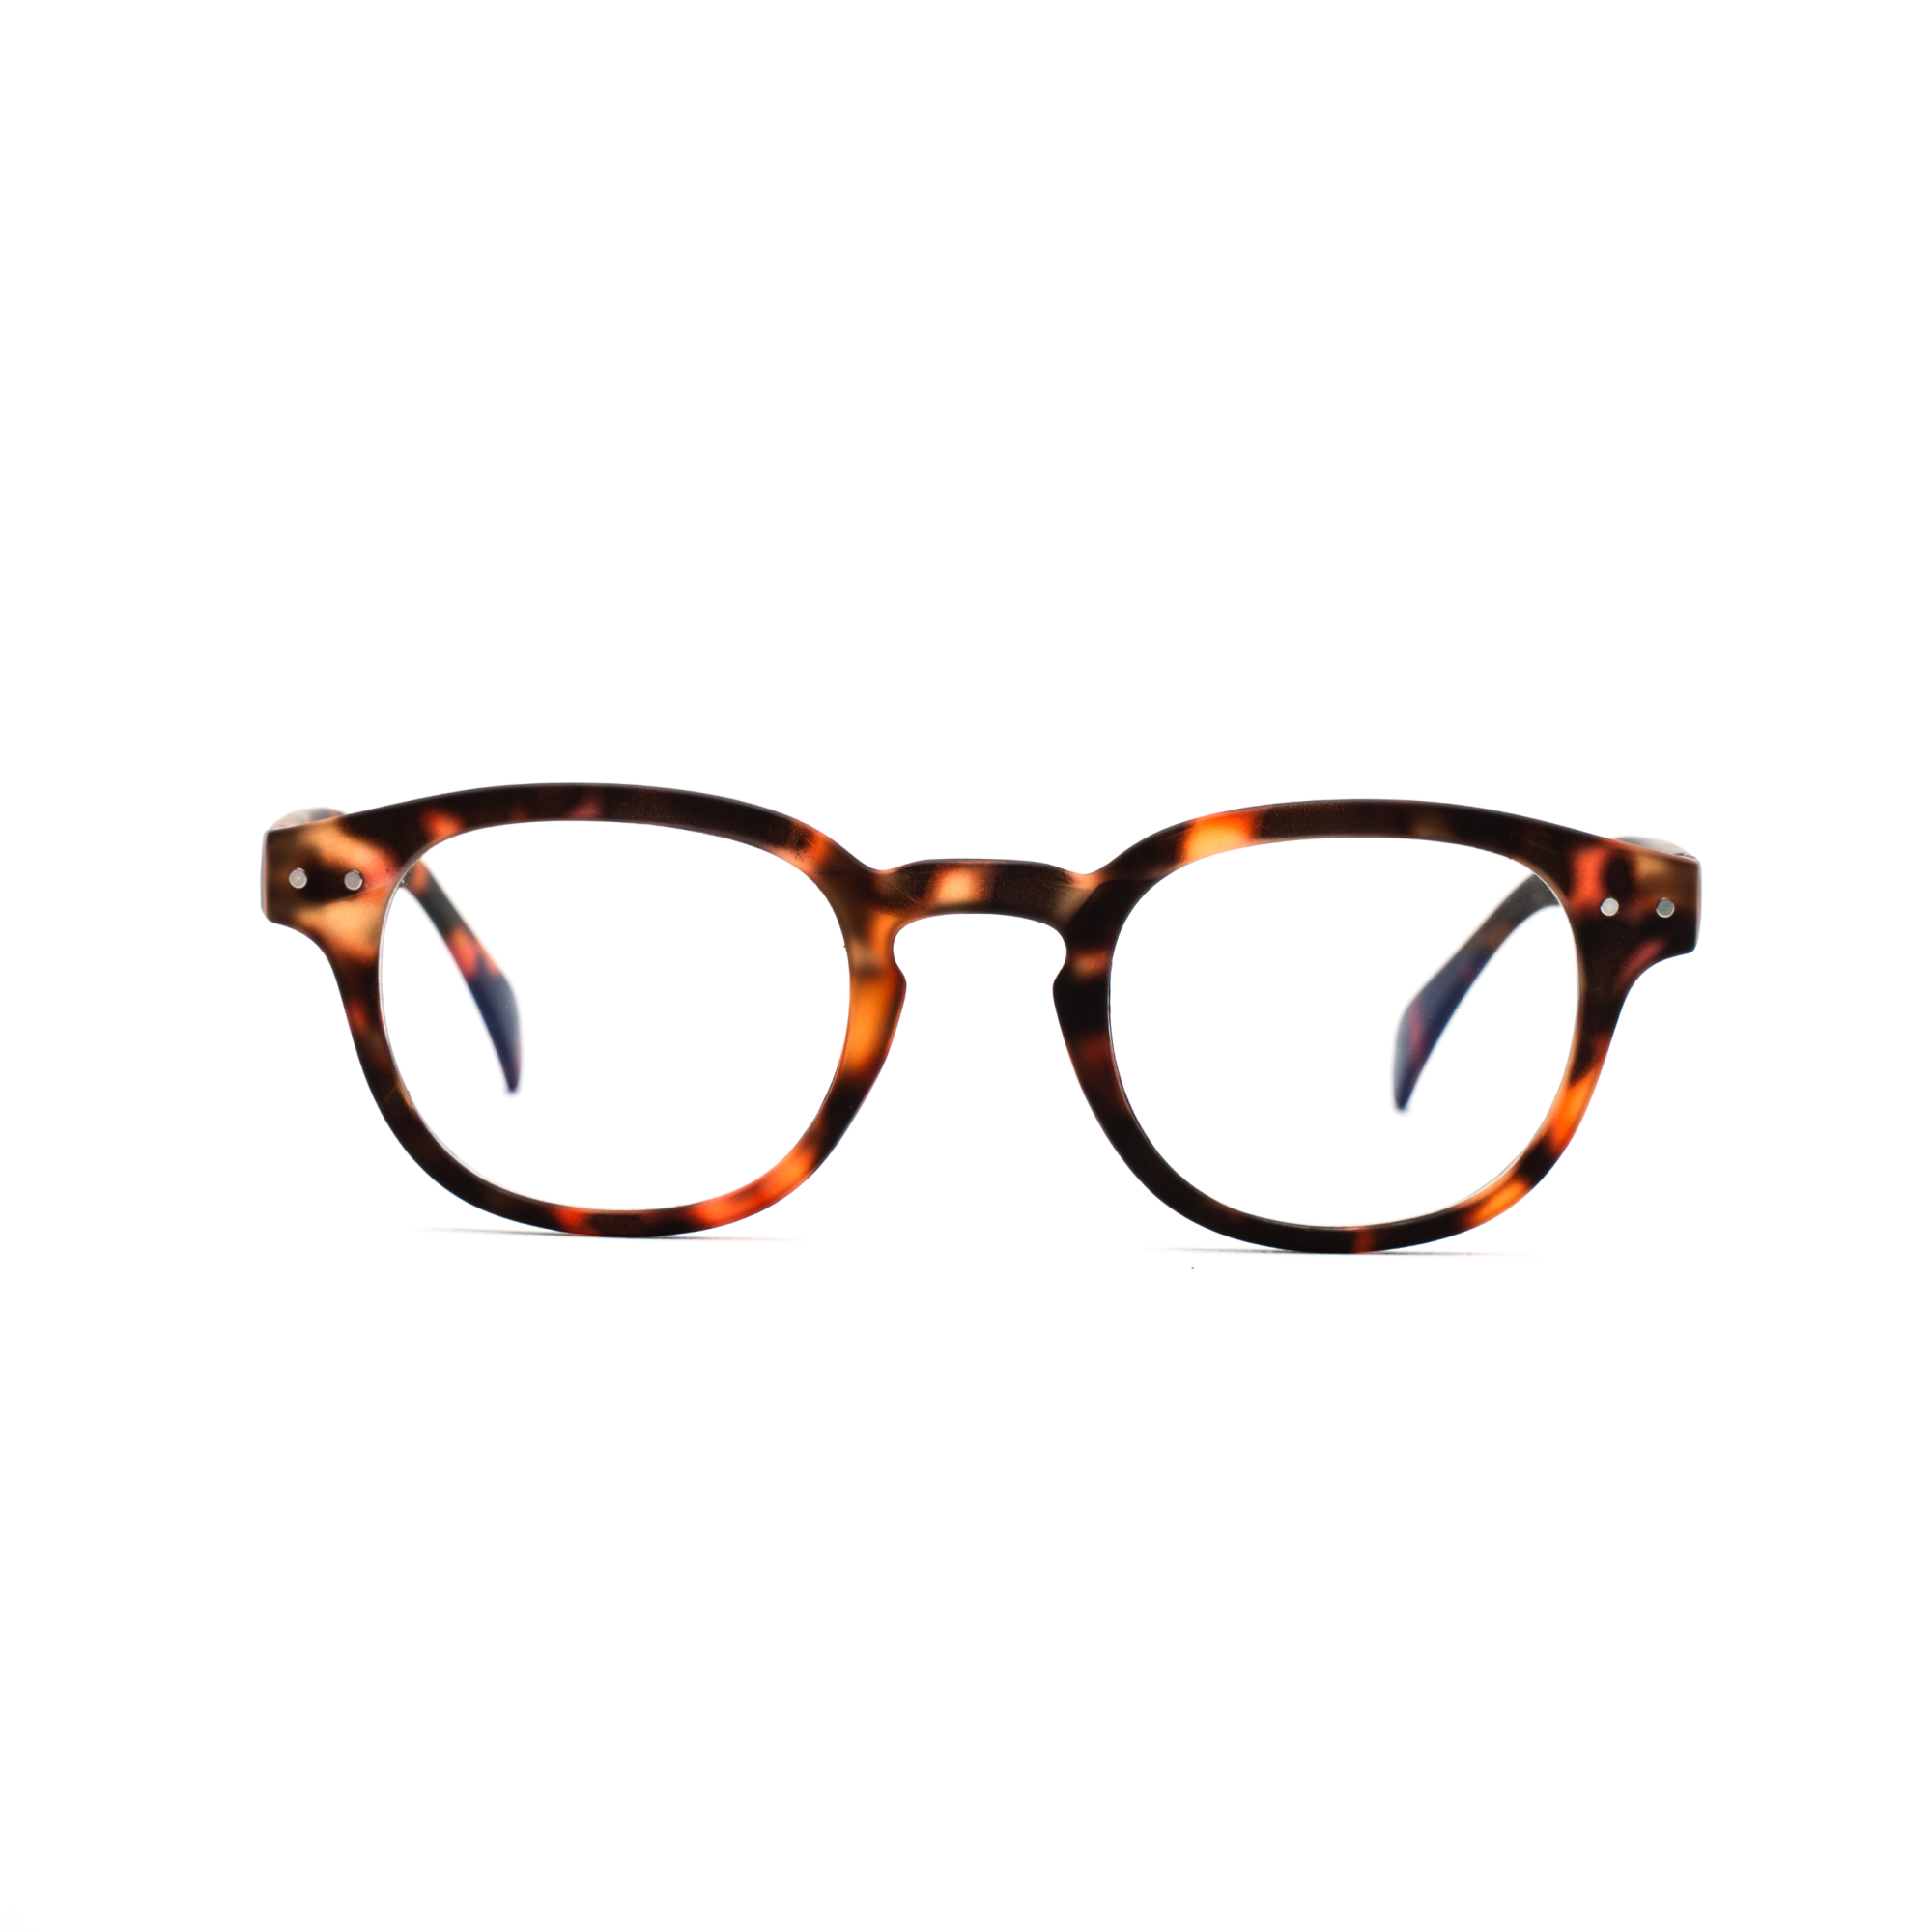 women's reading glasses – Anton ultimate - Tortoise